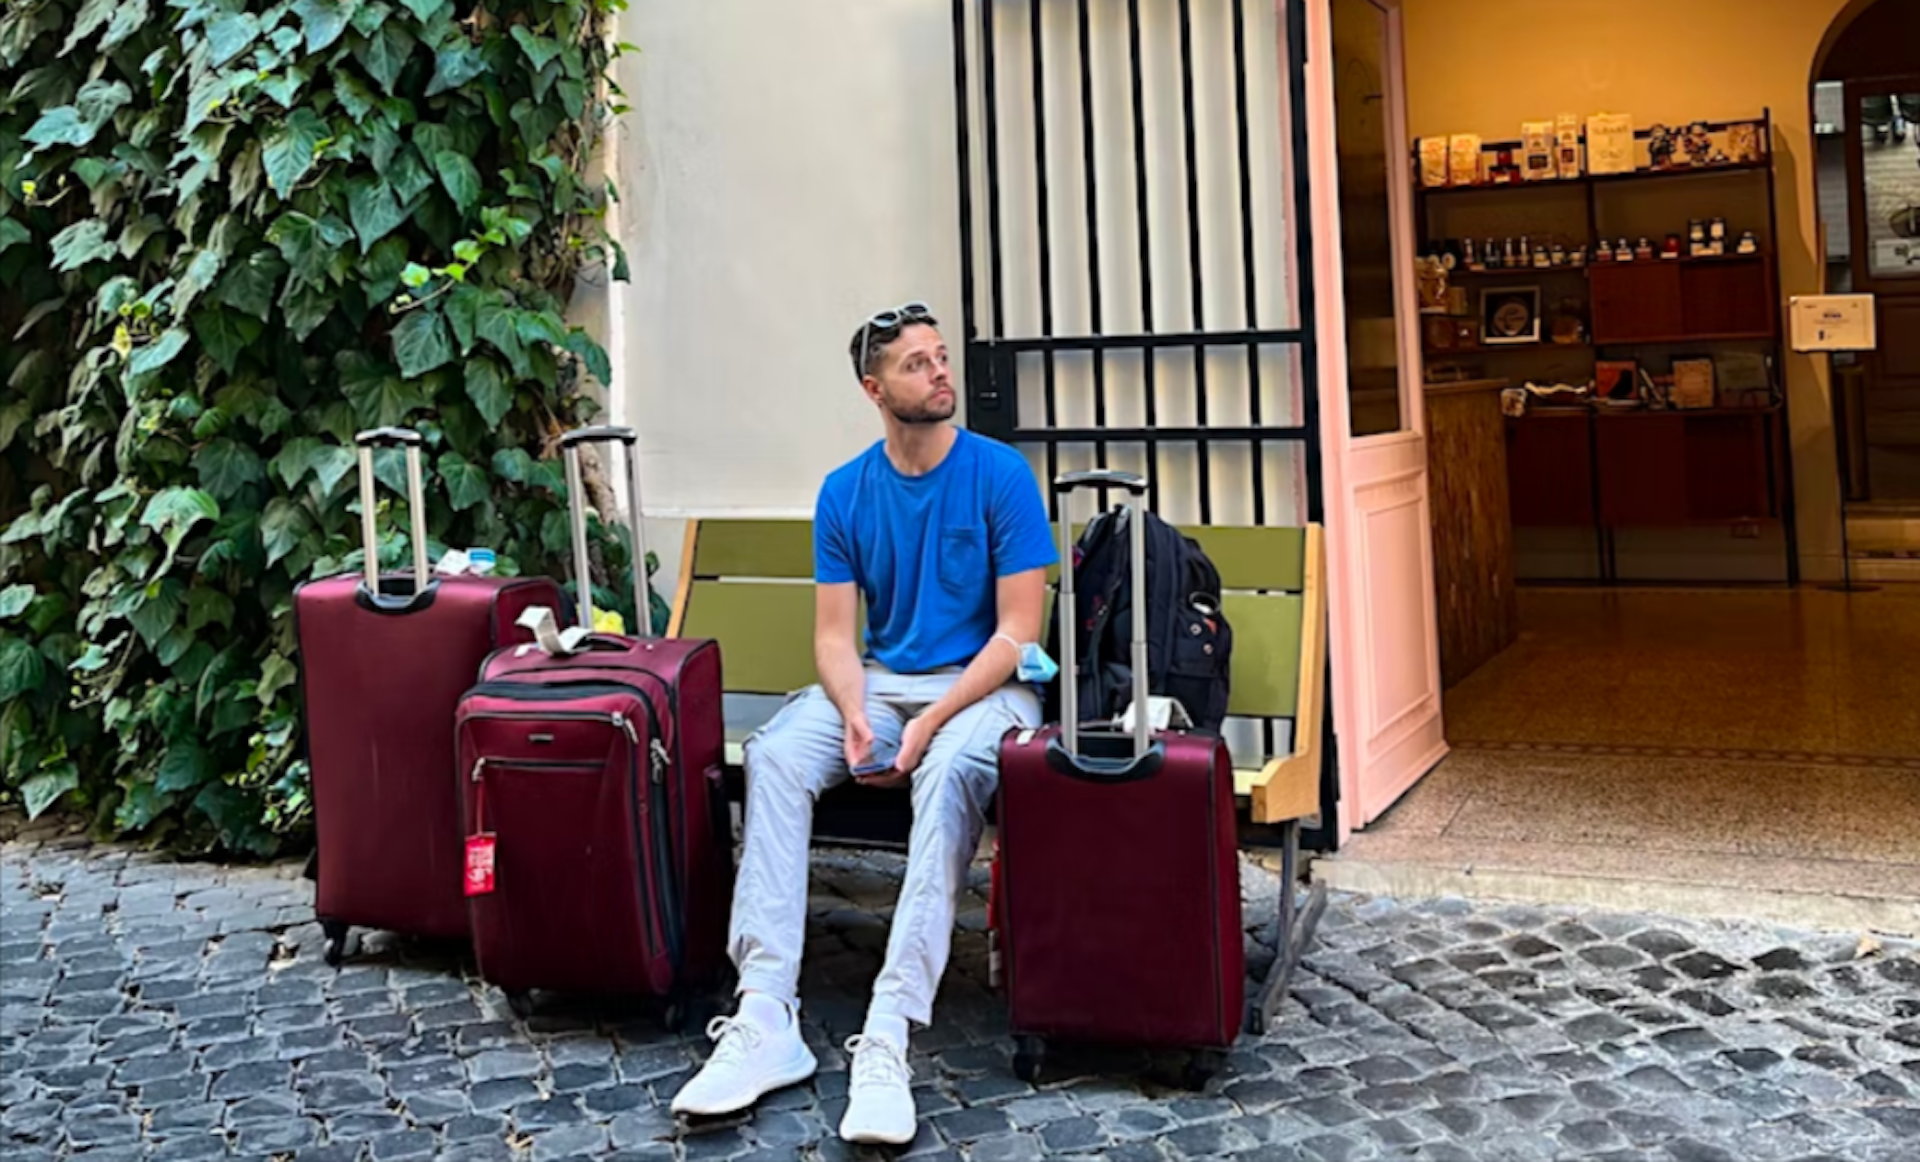 Writer Matthew checks into his hotel in Rome